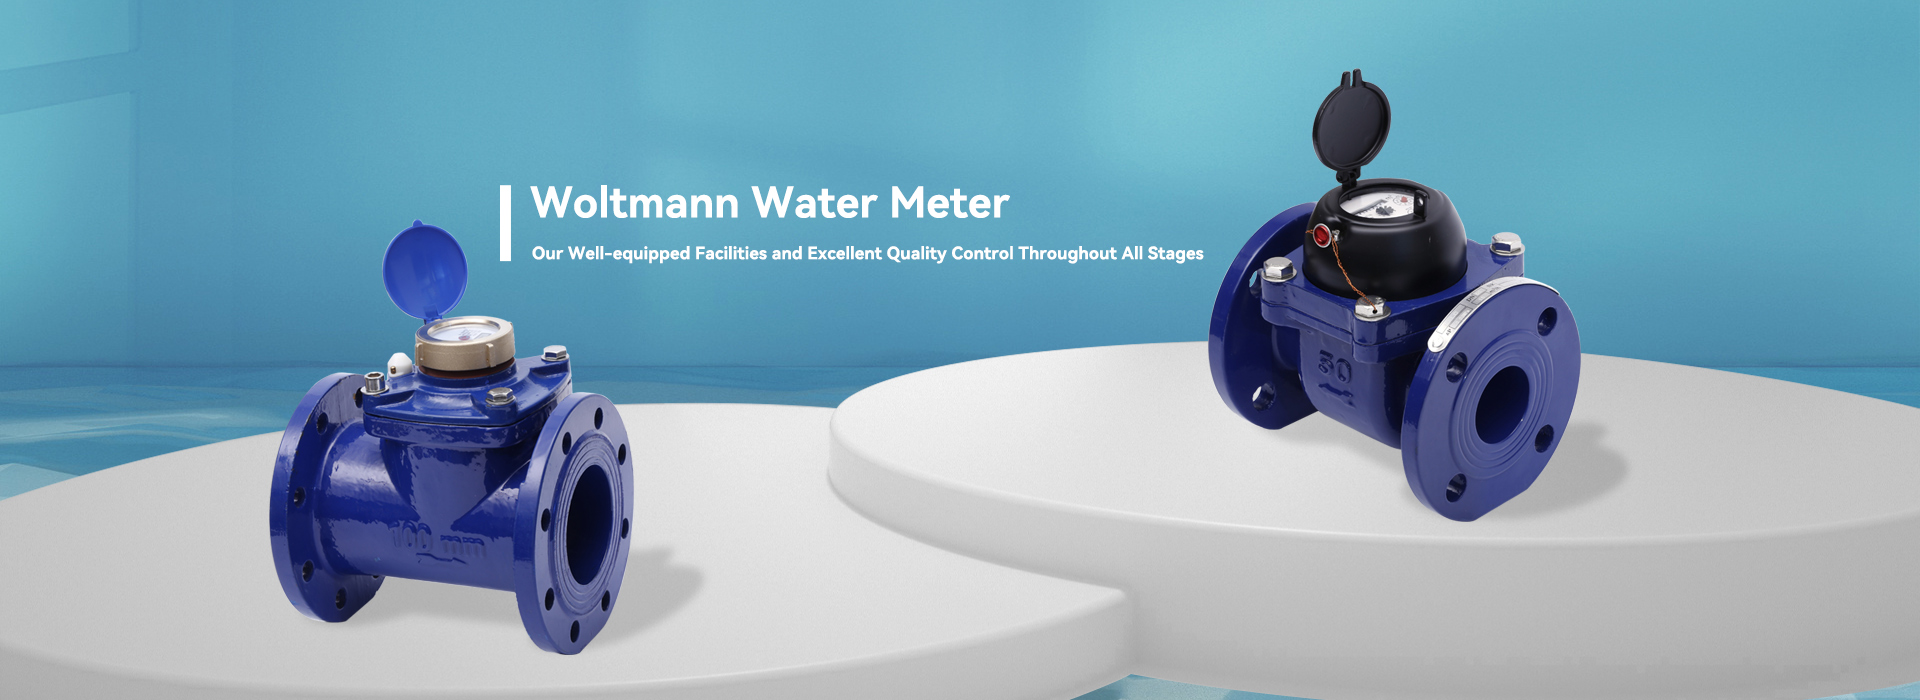 Nhà sản xuất và cung cấp đồng hồ nước Woltmann